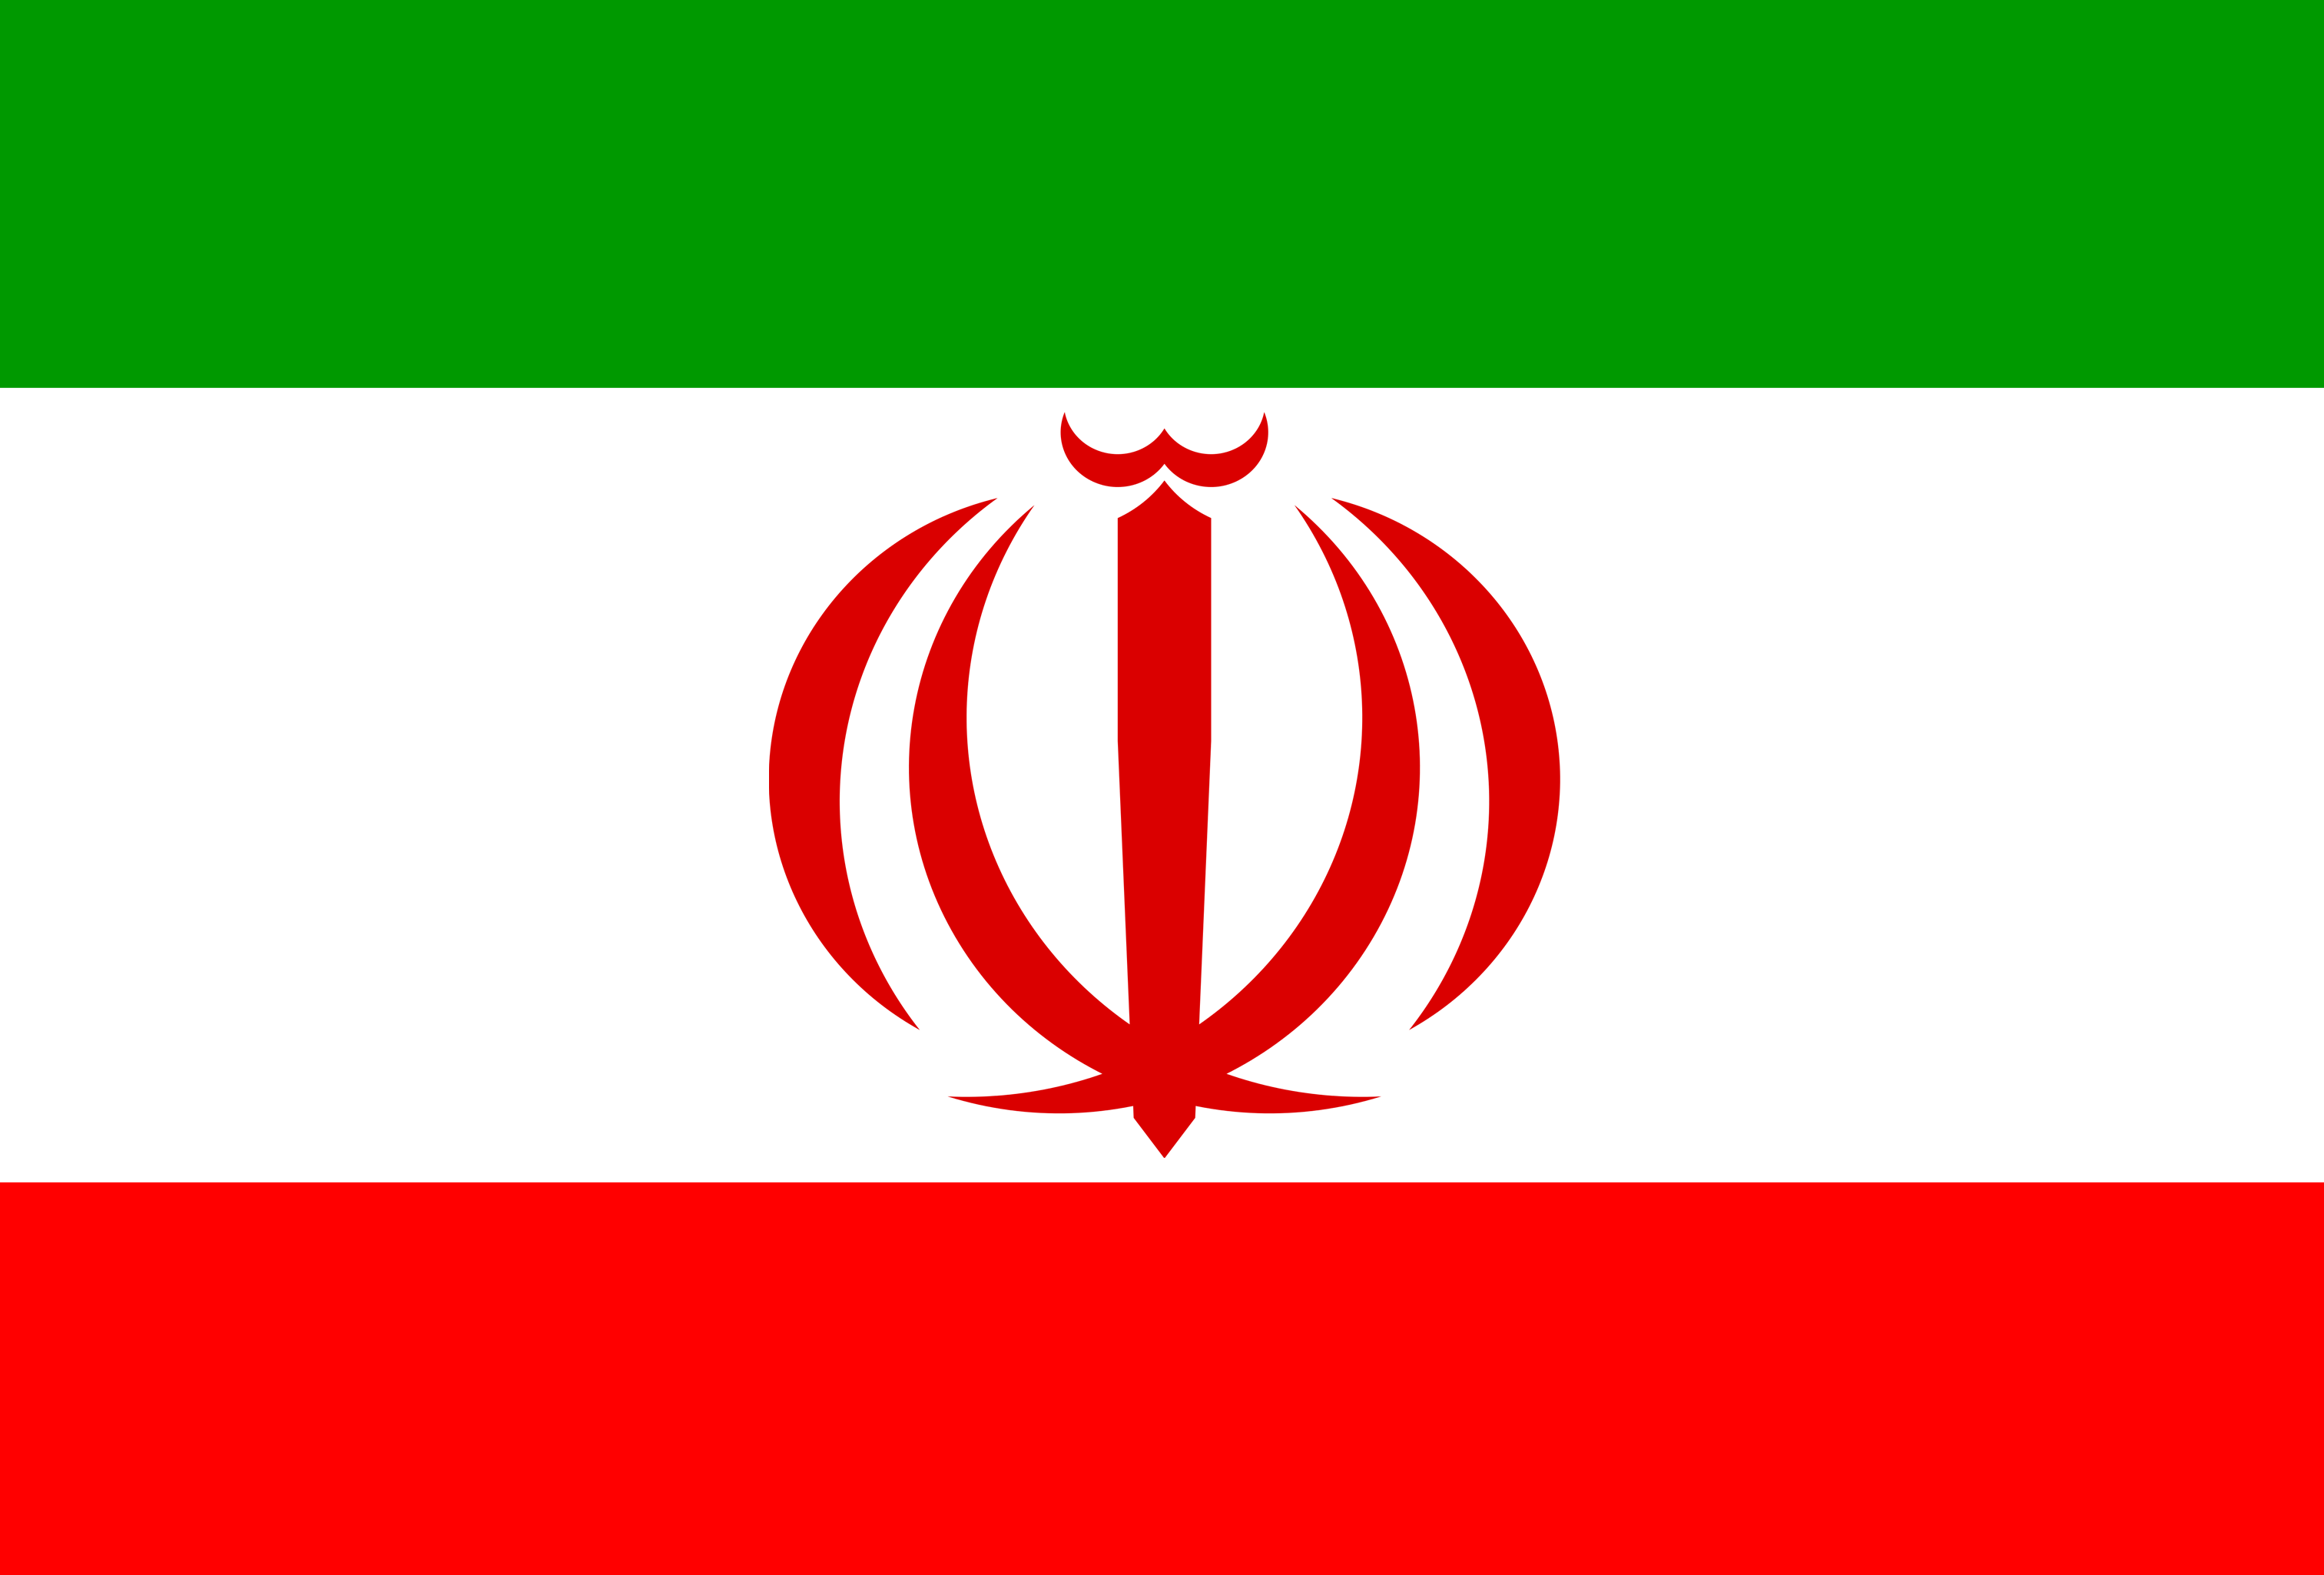 128x128 px, Flag Of Iran Icon